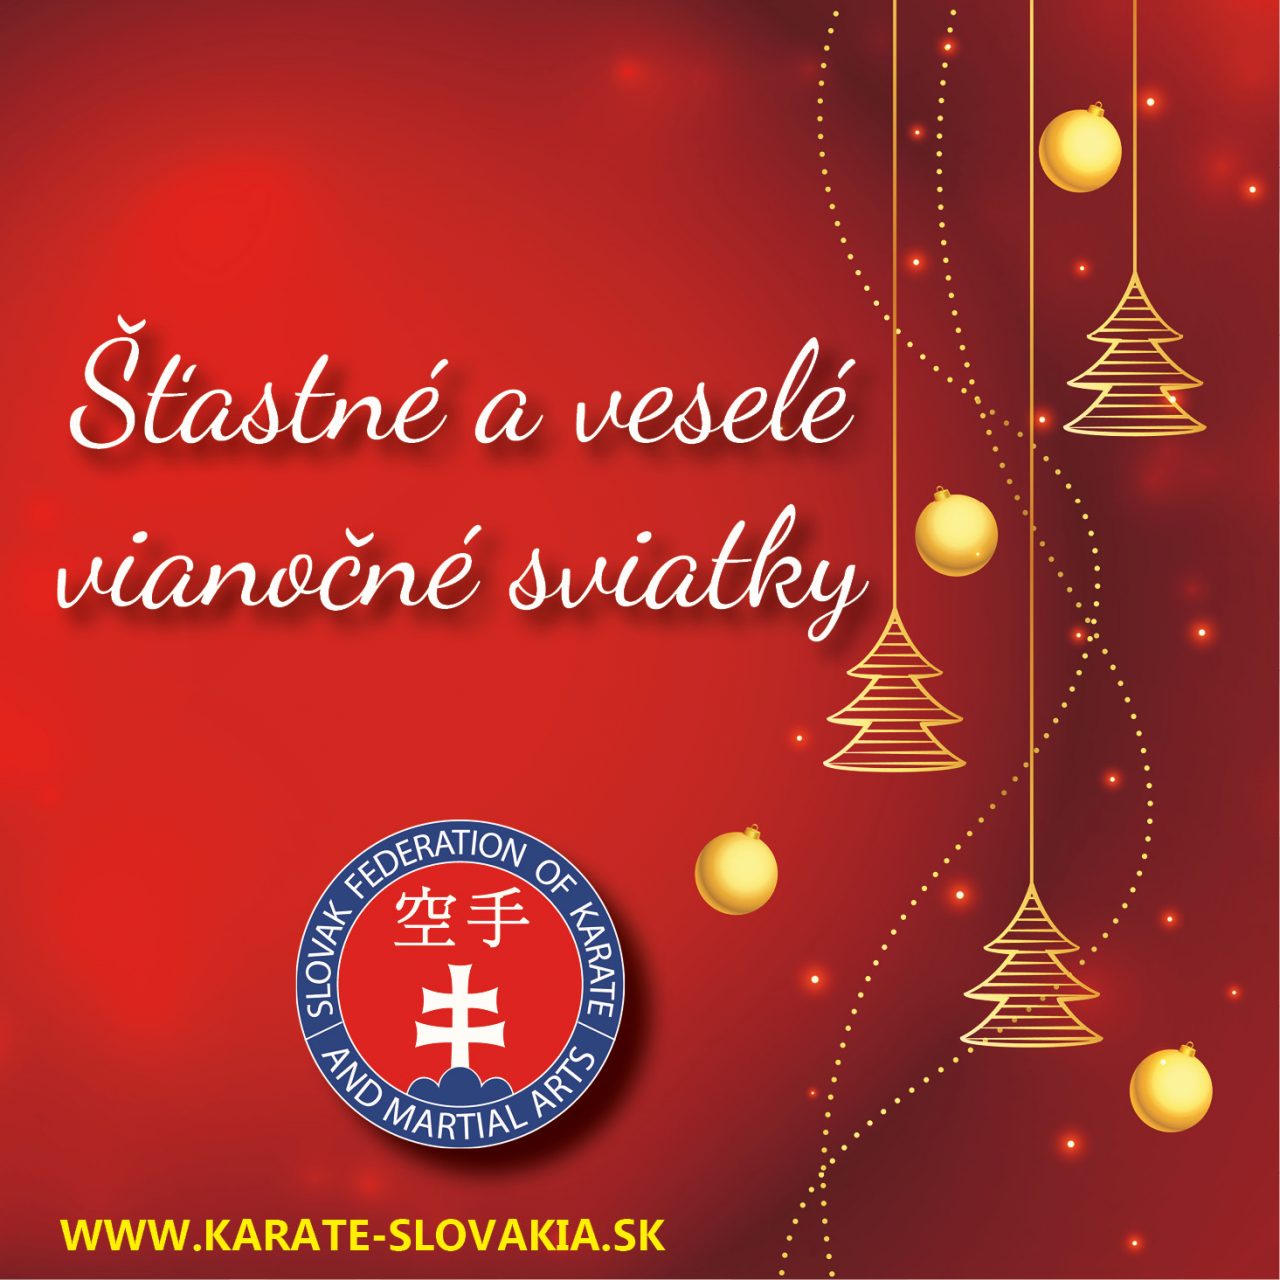 https://karate-slovakia.sk/wp-content/uploads/vianoce2021_SK-1280x1280.jpg